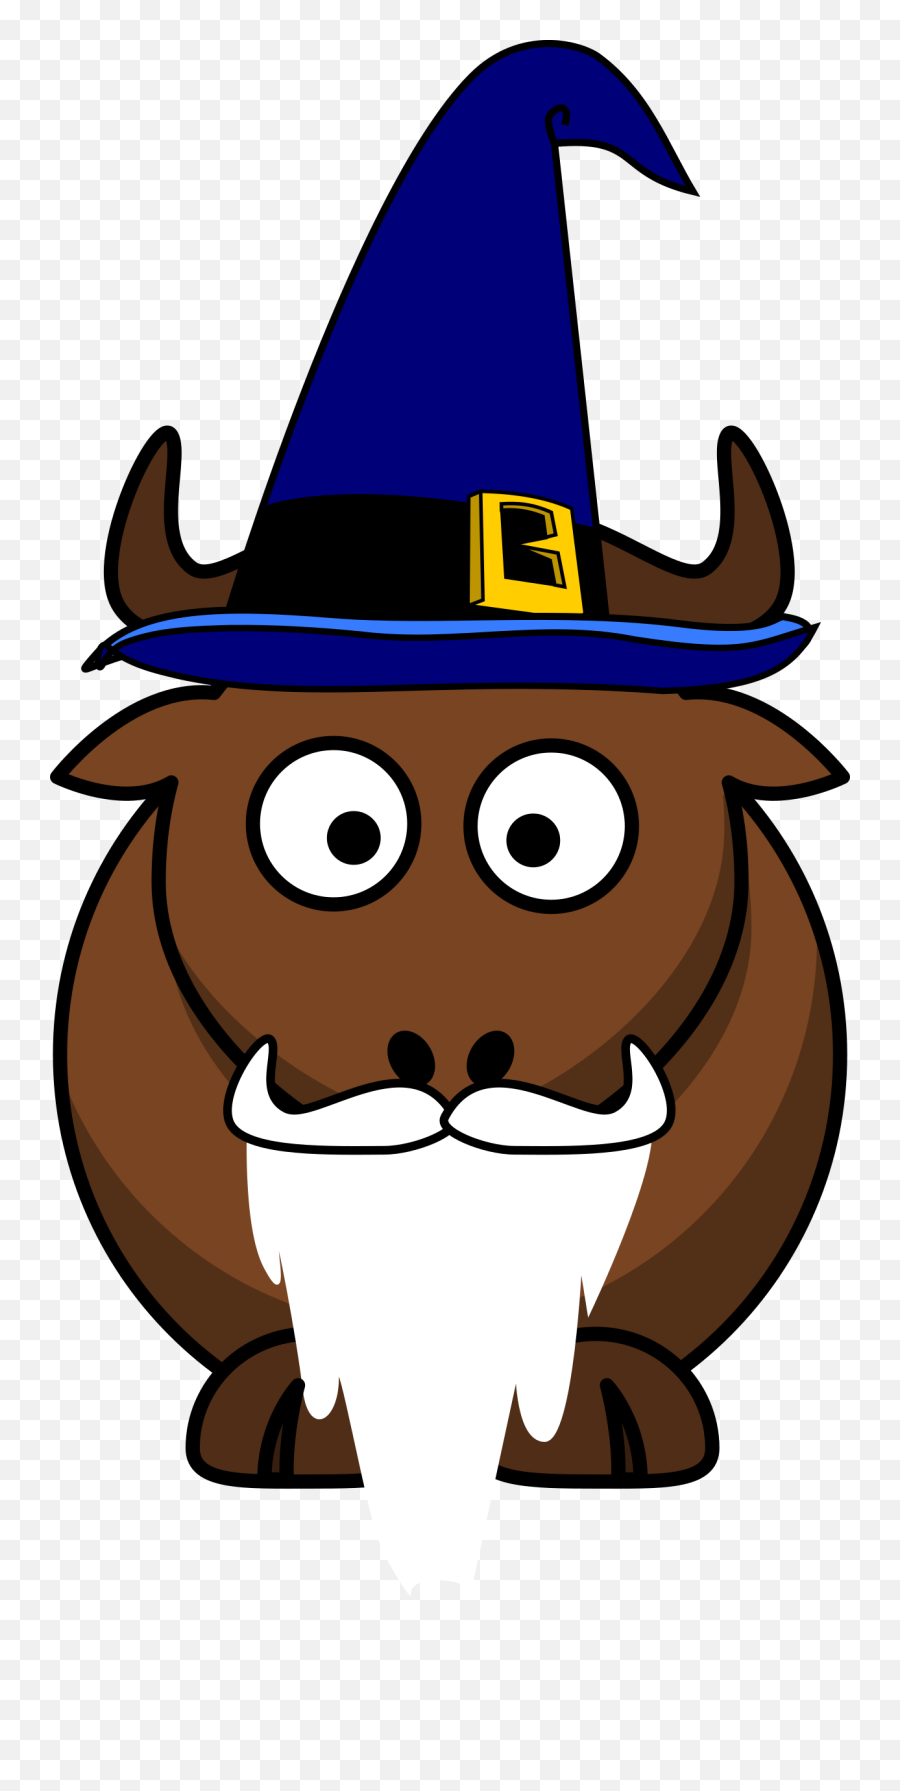 Wizard Public Domain Image Search - Freeimg Bull Clipart Emoji,Emoticon Wizard Cap